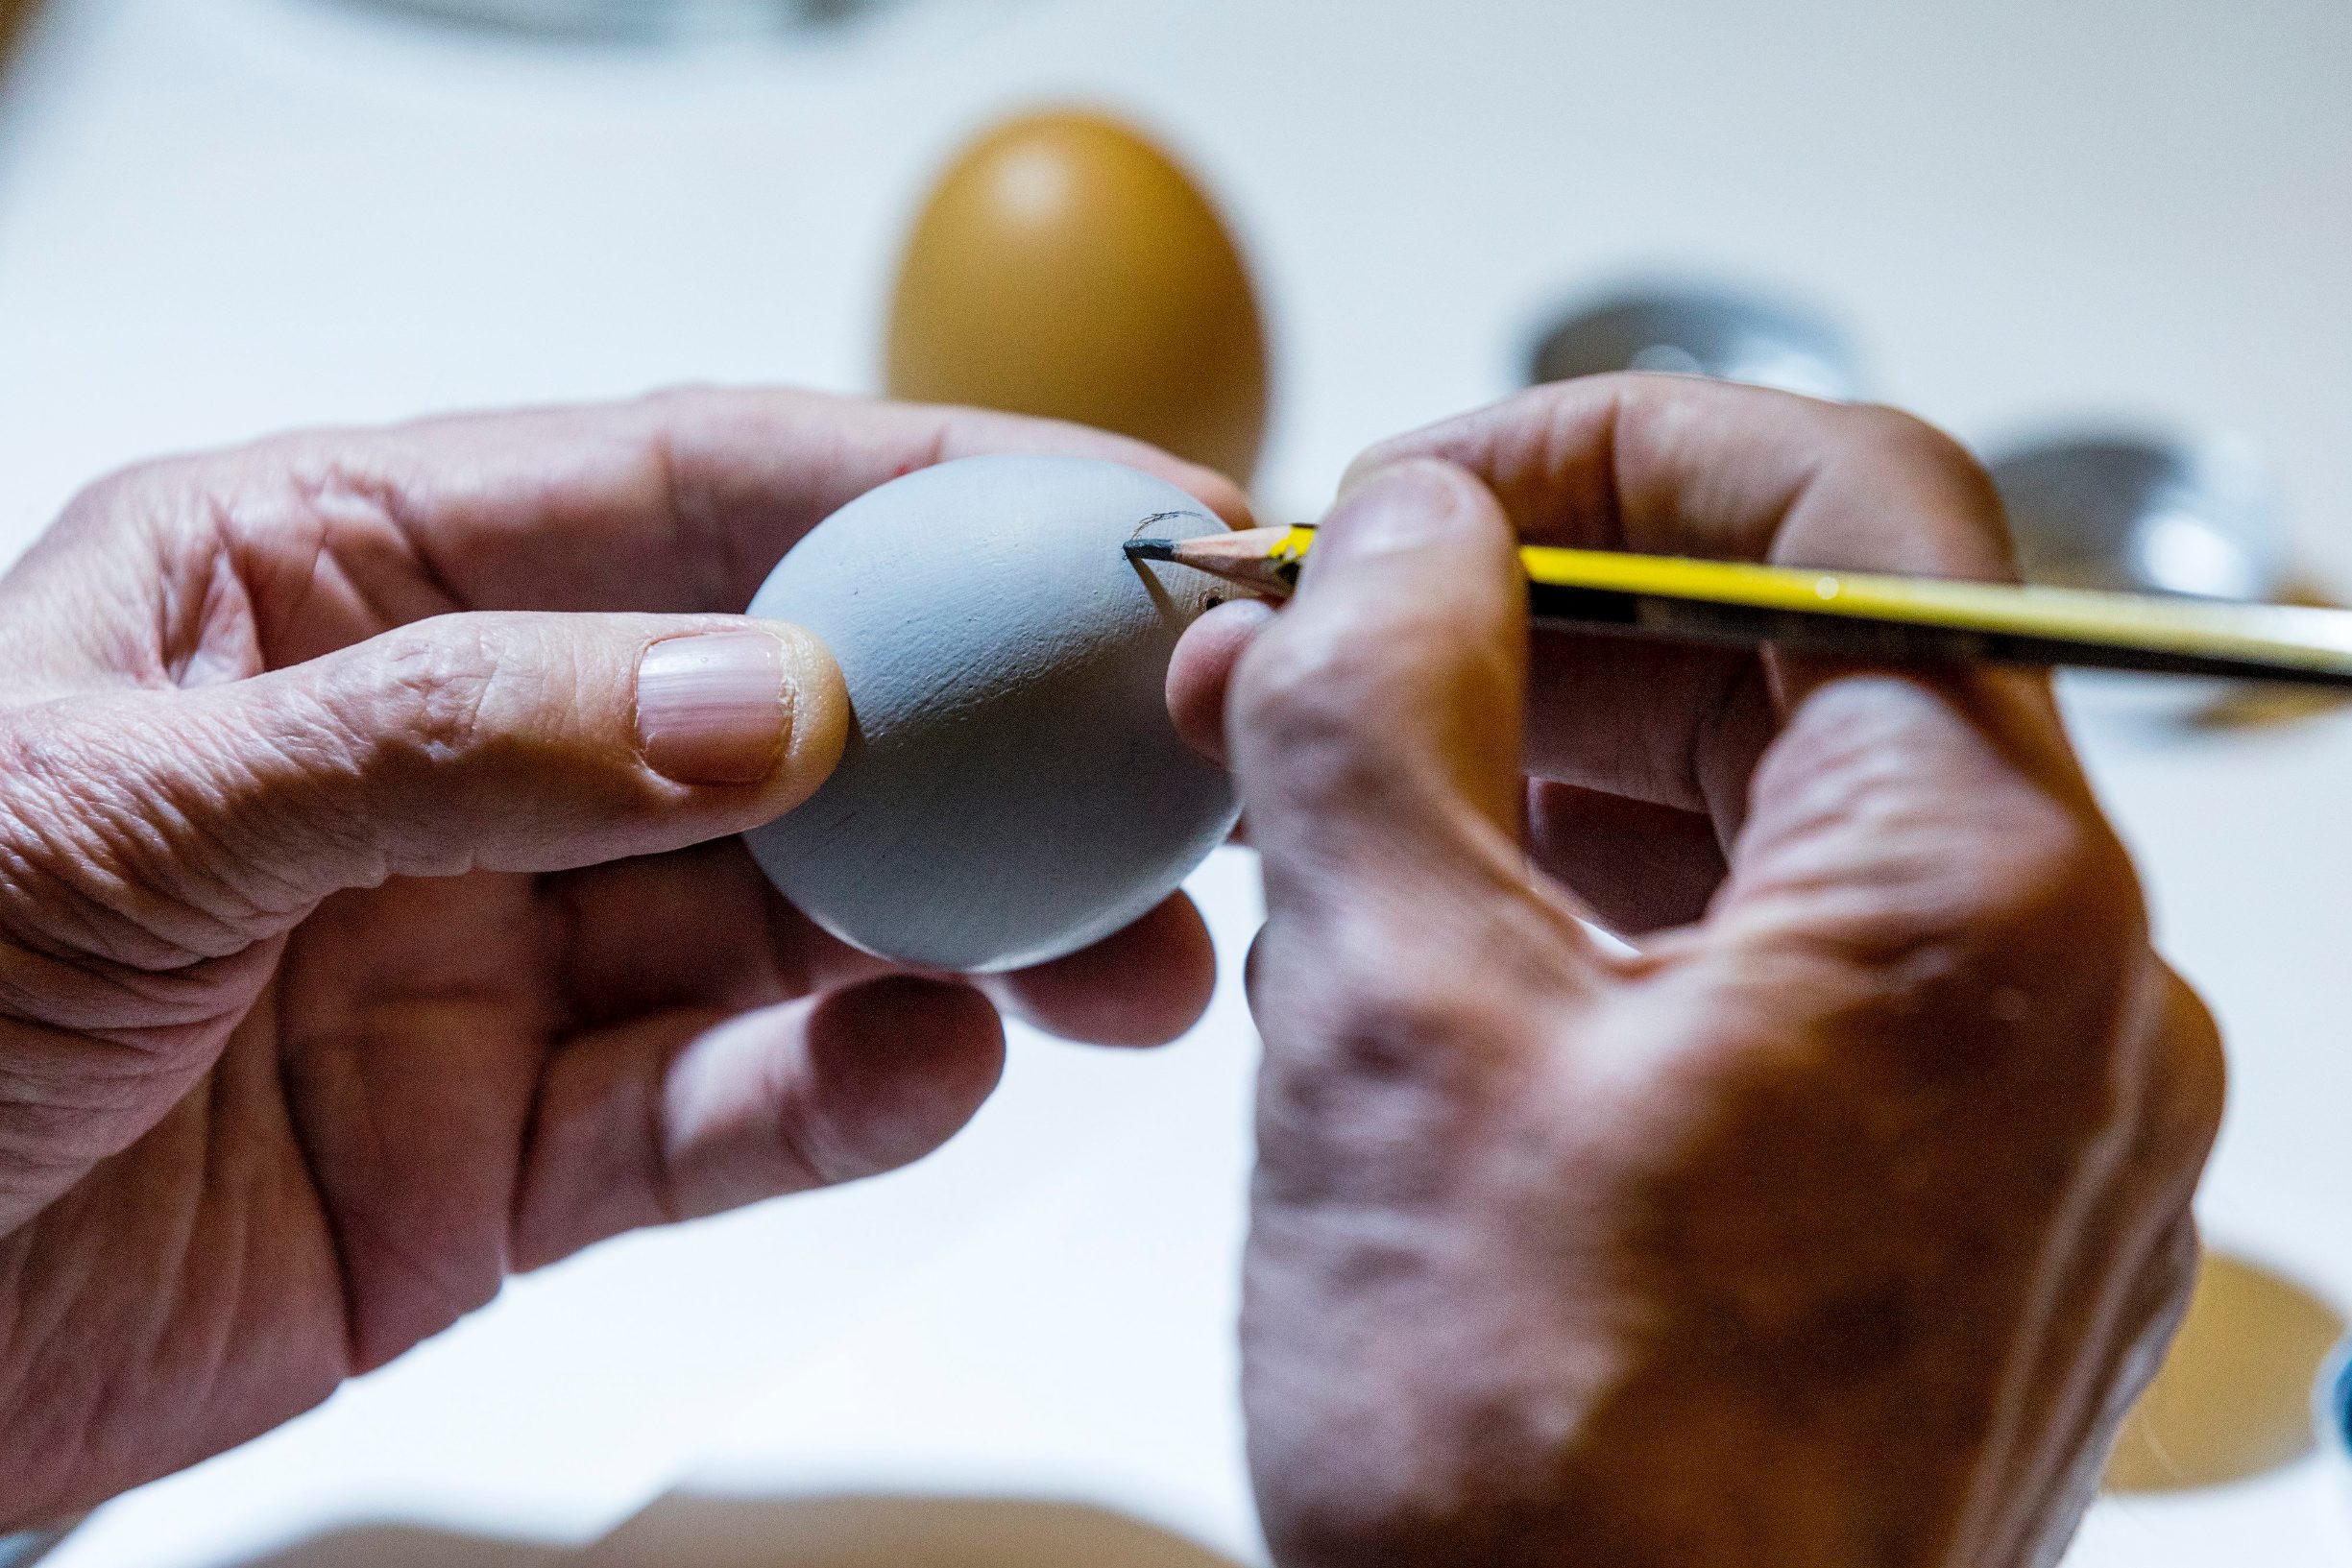 Zagreb, 070420.
Jurisiceva.
Umirovljeni animator Tomislav Sporis pokazuje kako oslikava svoja uskrsnja jaja.
Na fotografiji: bojanje temeljnom bojom i pocetak skiciranja.
Foto: Tomislav Kristo / CROPIX